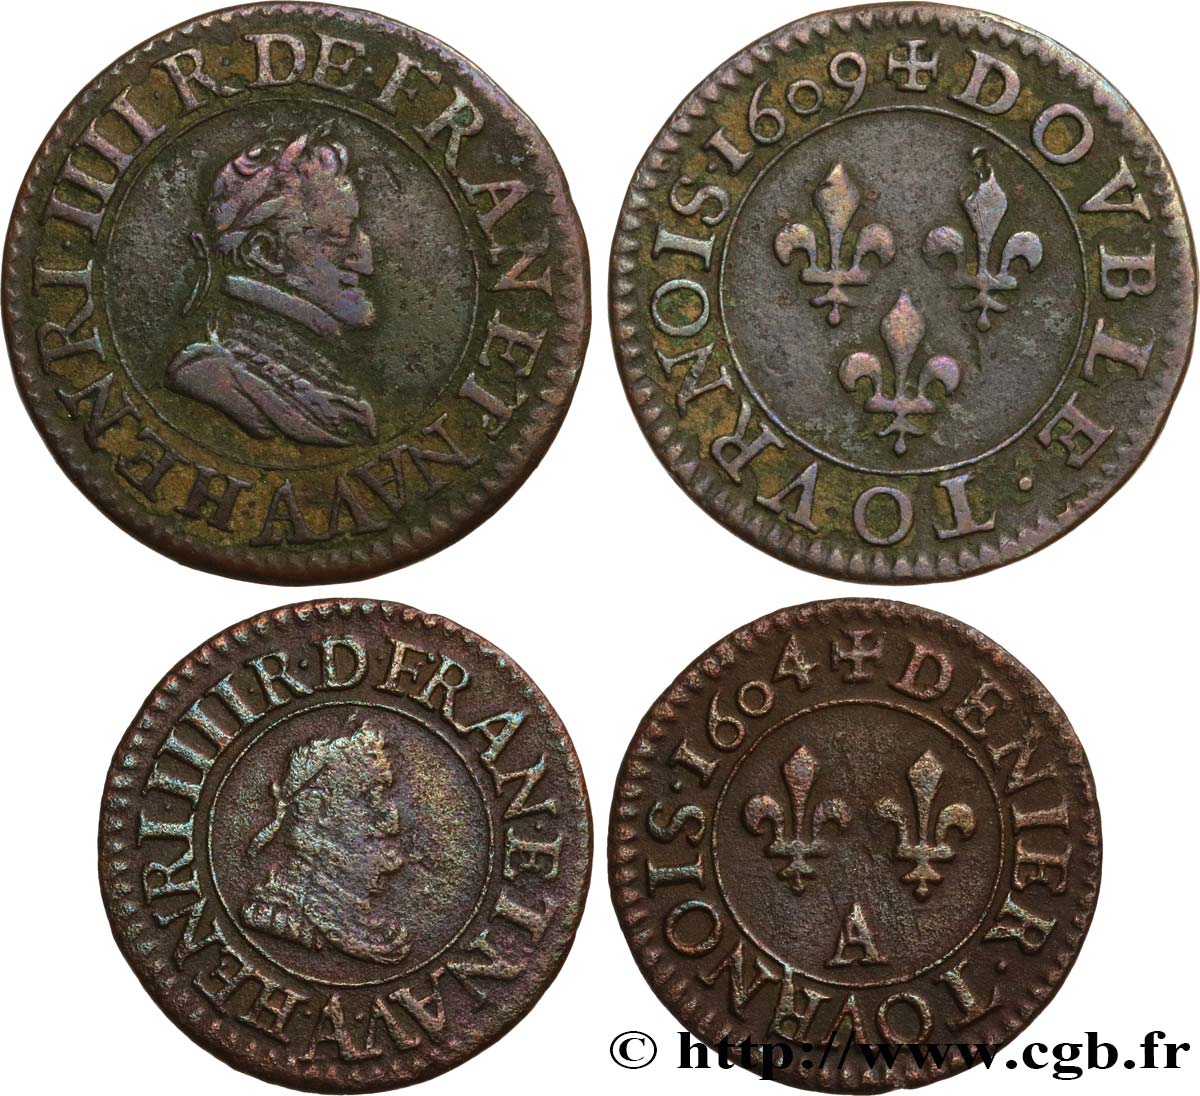 HENRY IV Lot de 2 monnaies royales n.d. s.l. VF